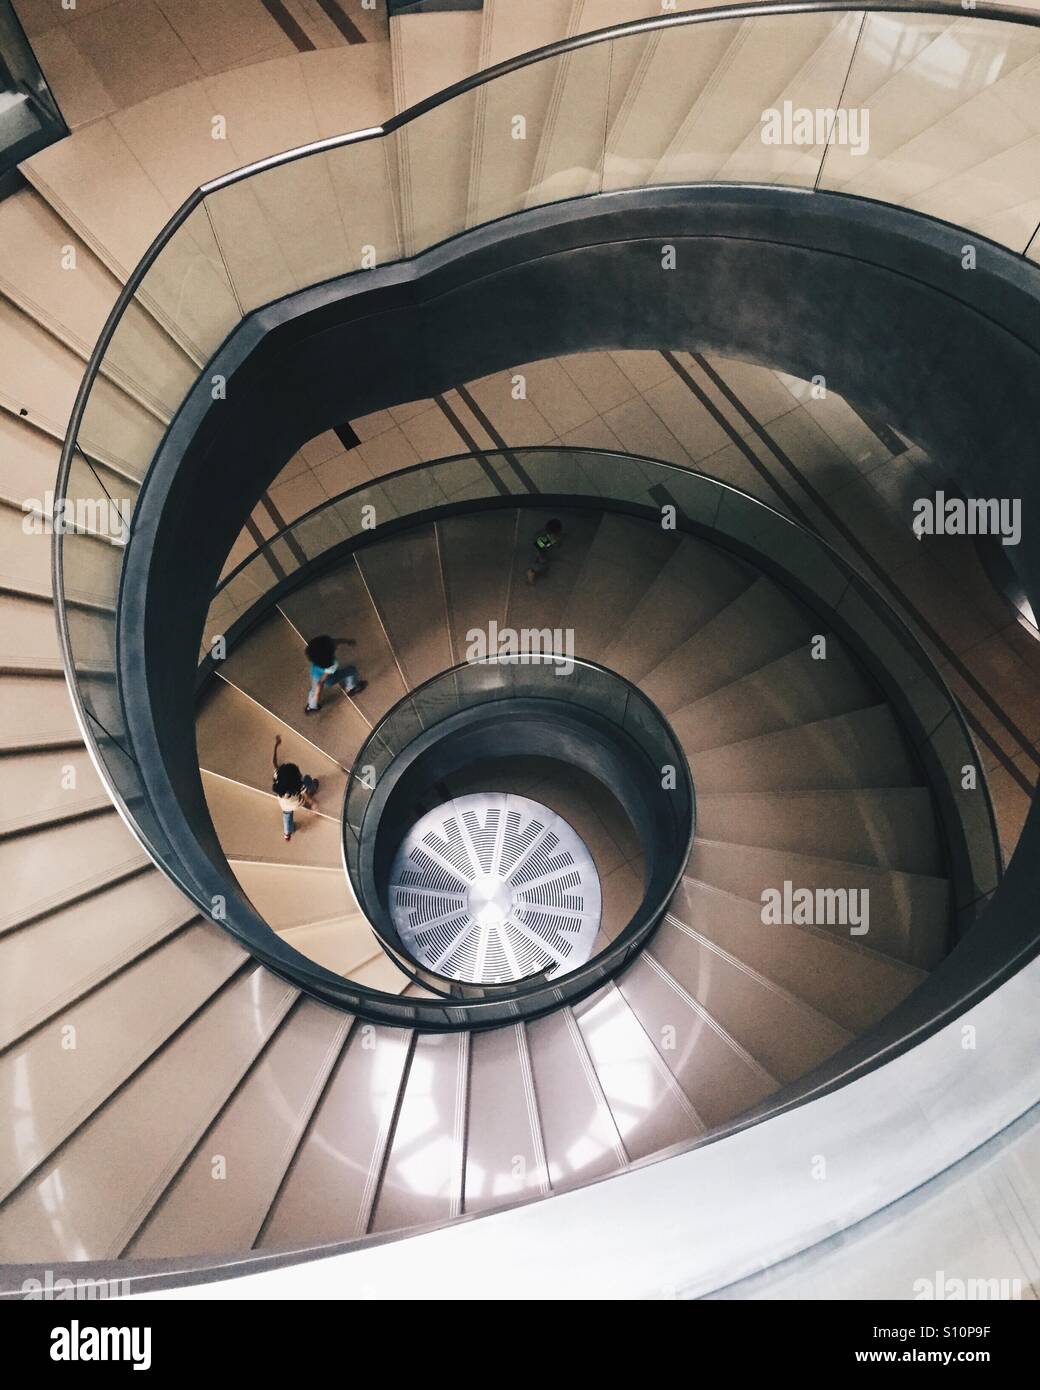 Spiral staircase at Sasana Kijang Stock Photo